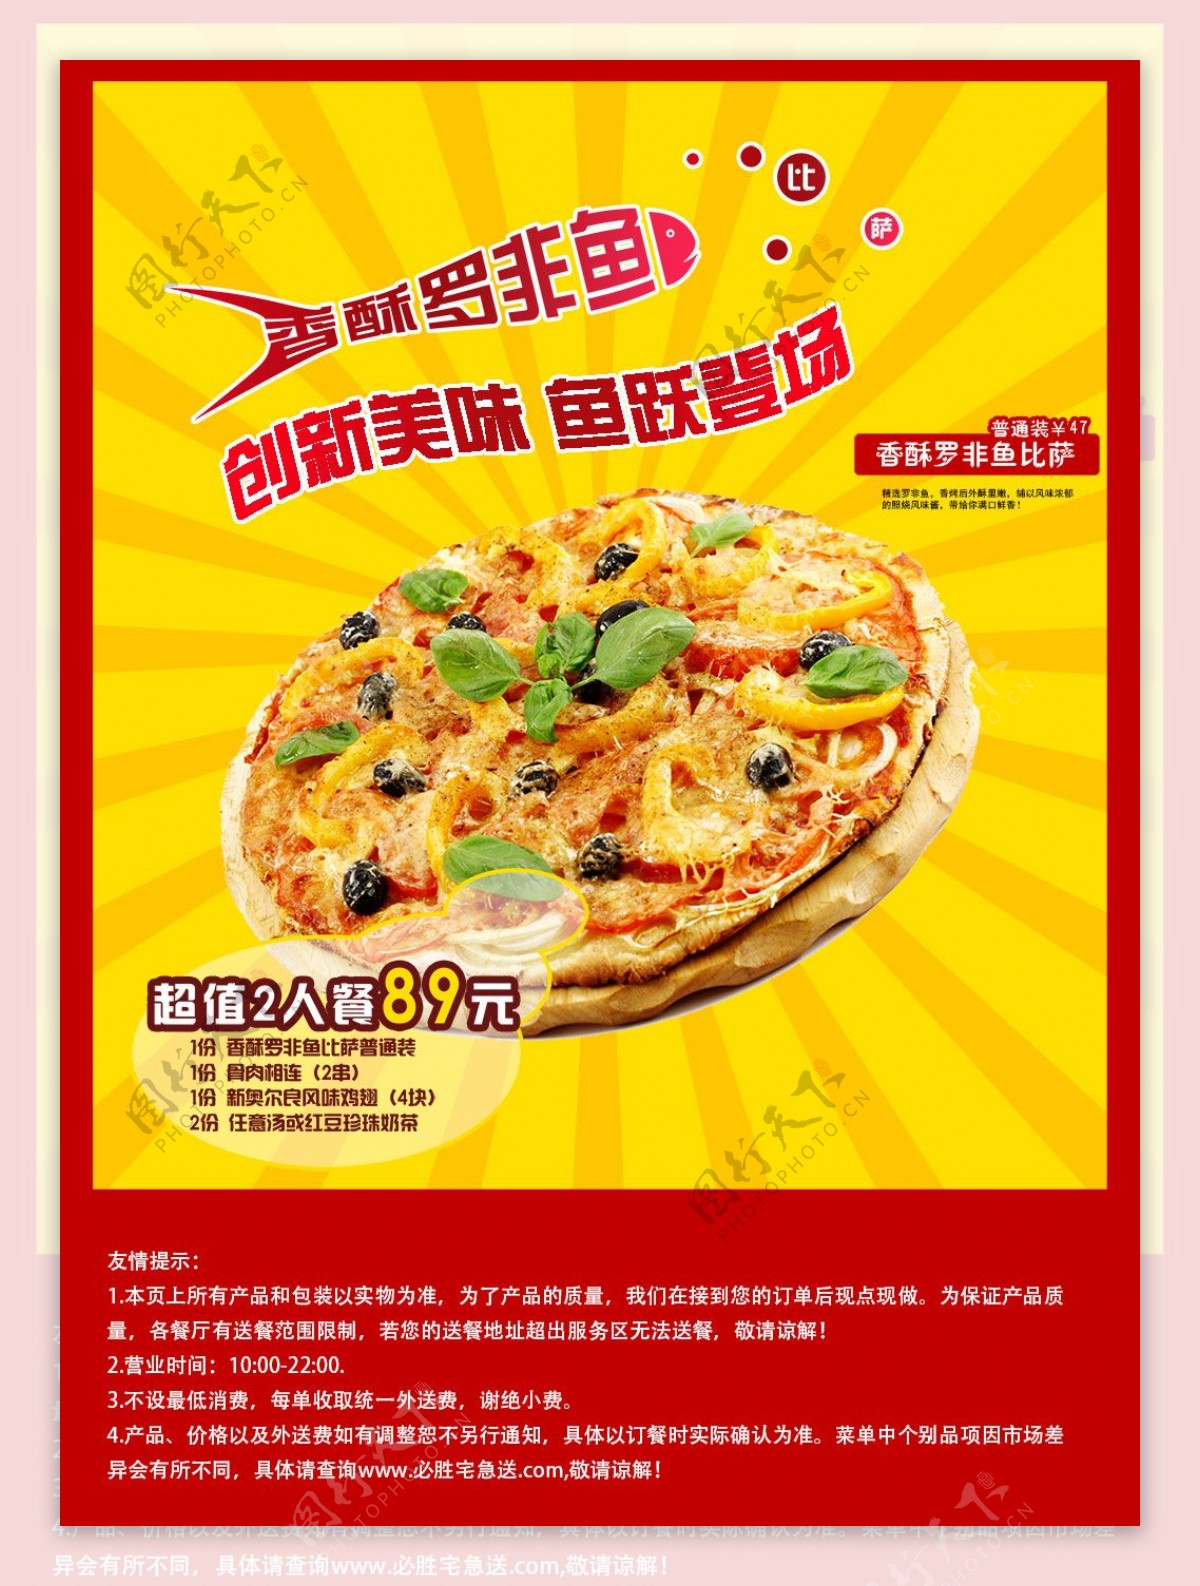 香酥罗非鱼披萨美食宣传海报设计psd素材